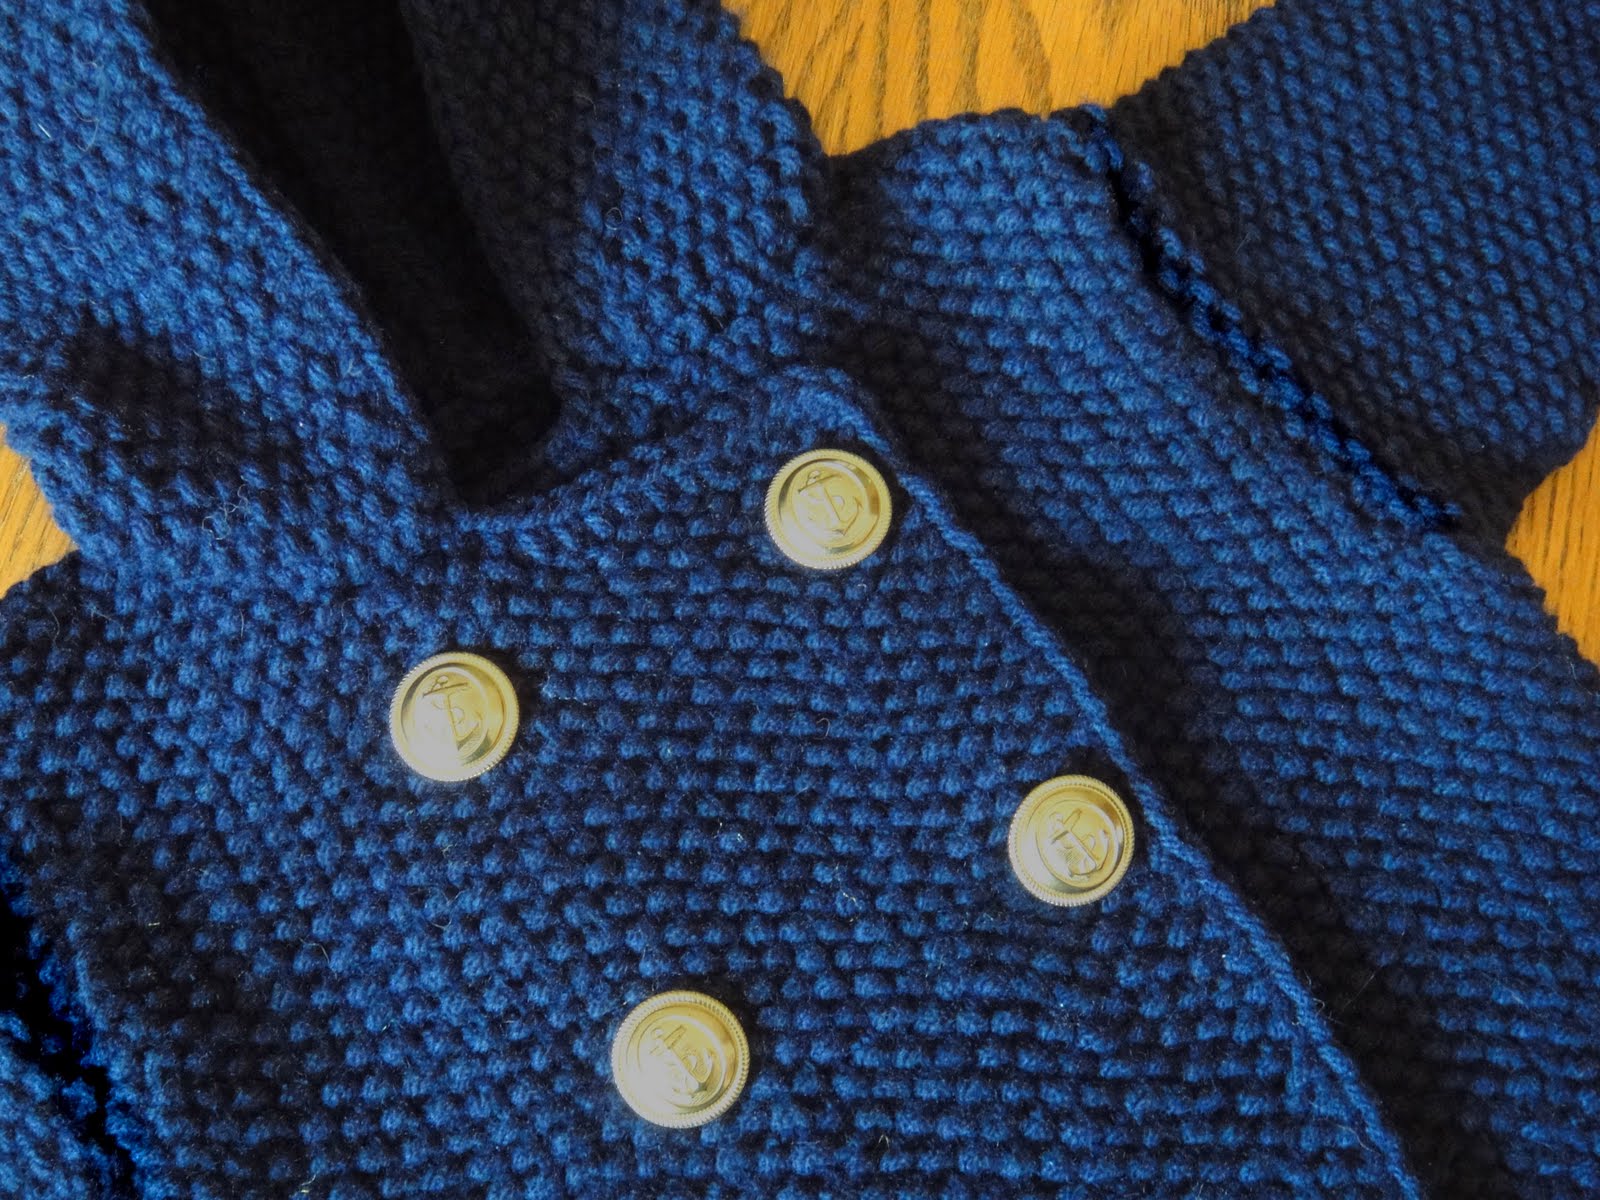 Jacket Knitting Patterns
at Royal Yarns